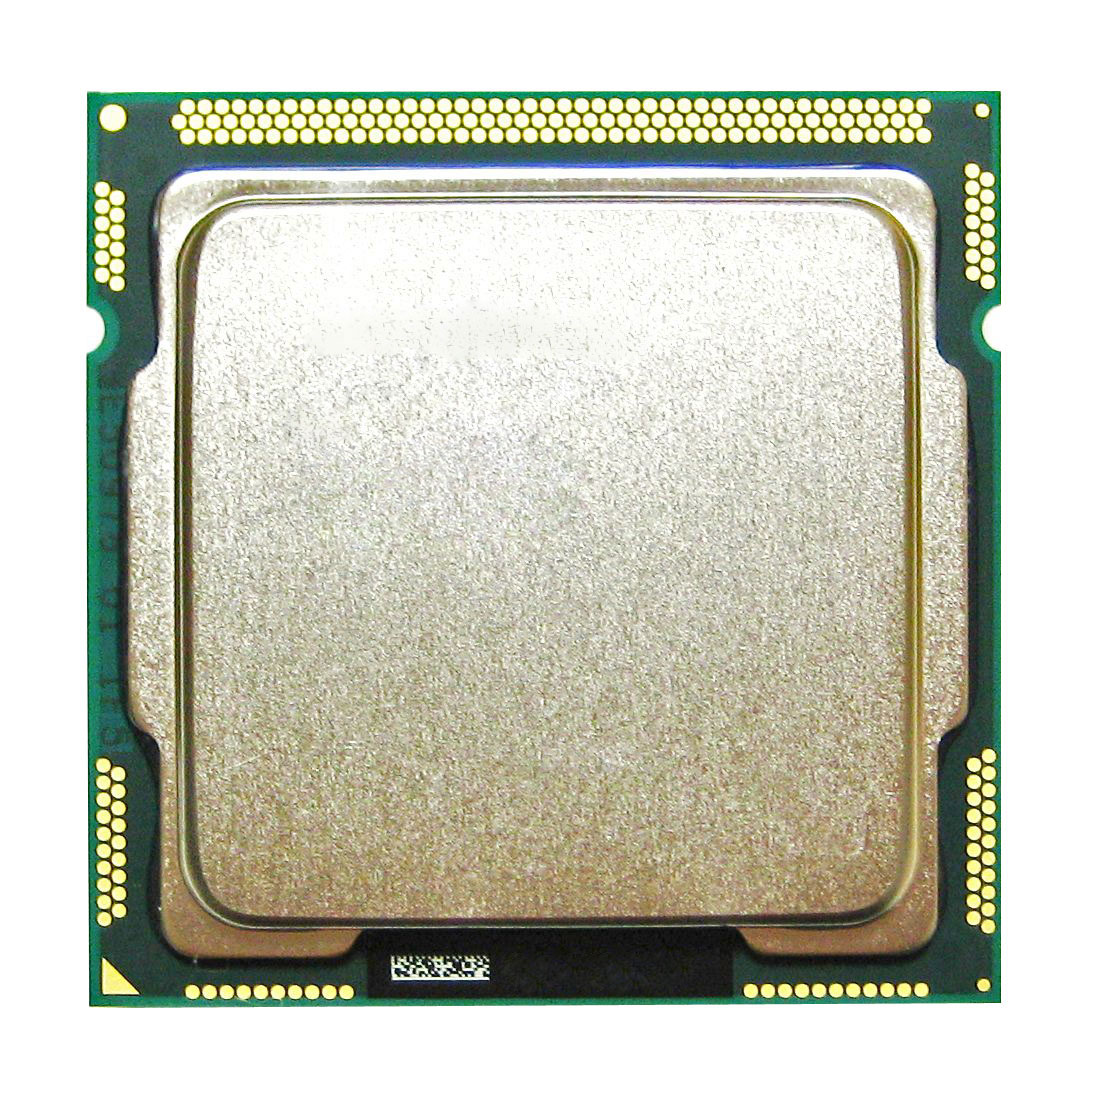 LK305AV HP 3.30GHz 5.00GT/s DMI 6MB L3 Cache Intel Core i5-2500 Quad Core Desktop Processor Upgrade